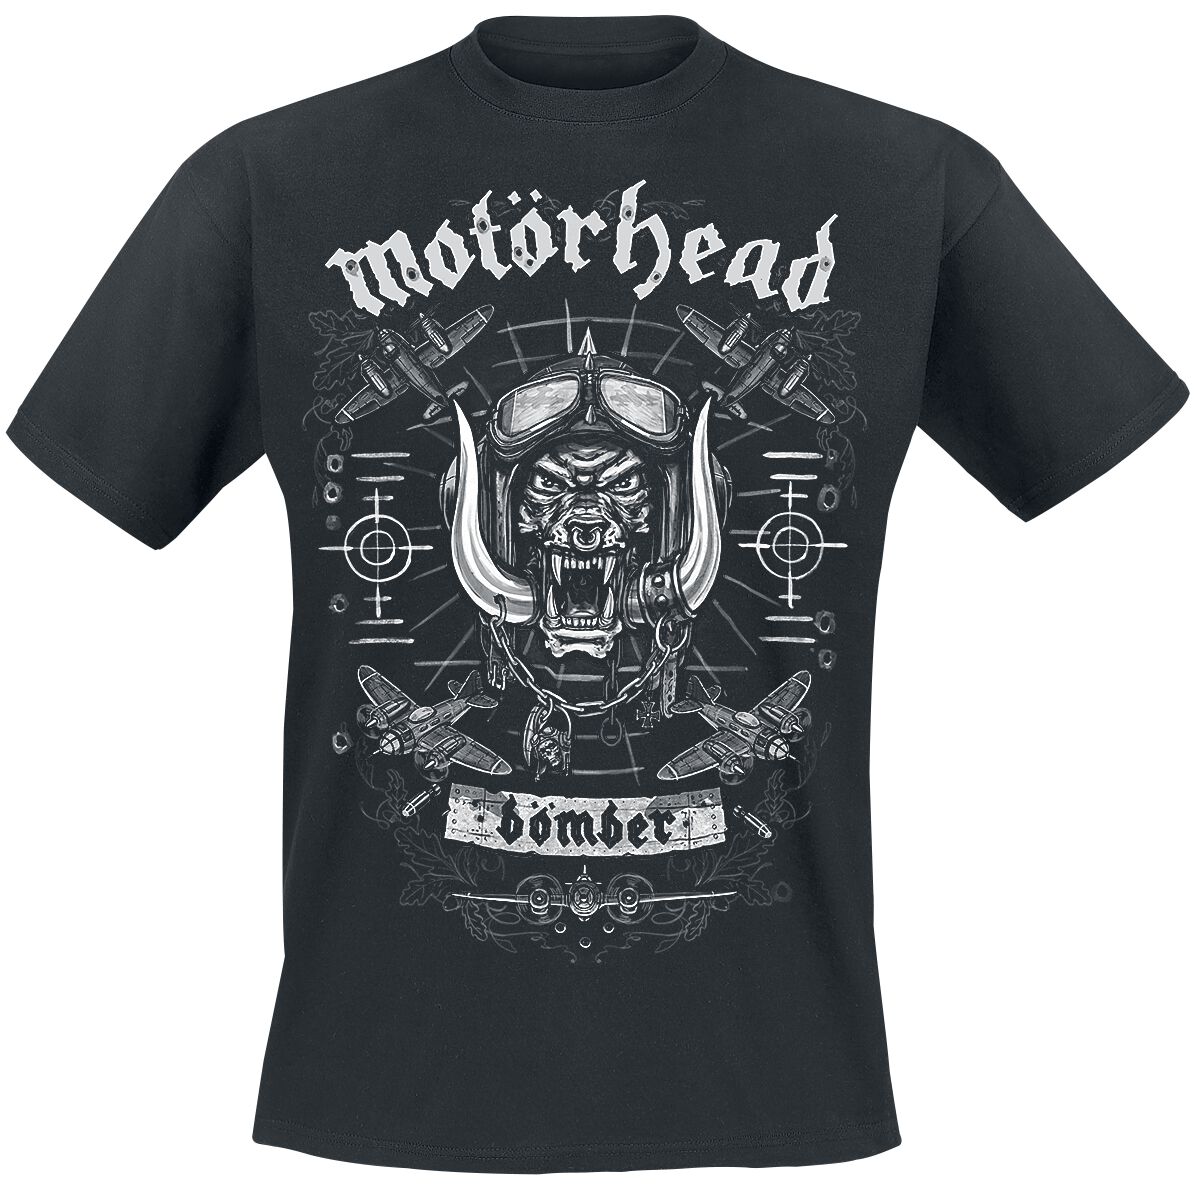 Motörhead T-Shirt - Bomber Planes - S bis XXL - für Männer - Größe S - schwarz  - Lizenziertes Merchandise!